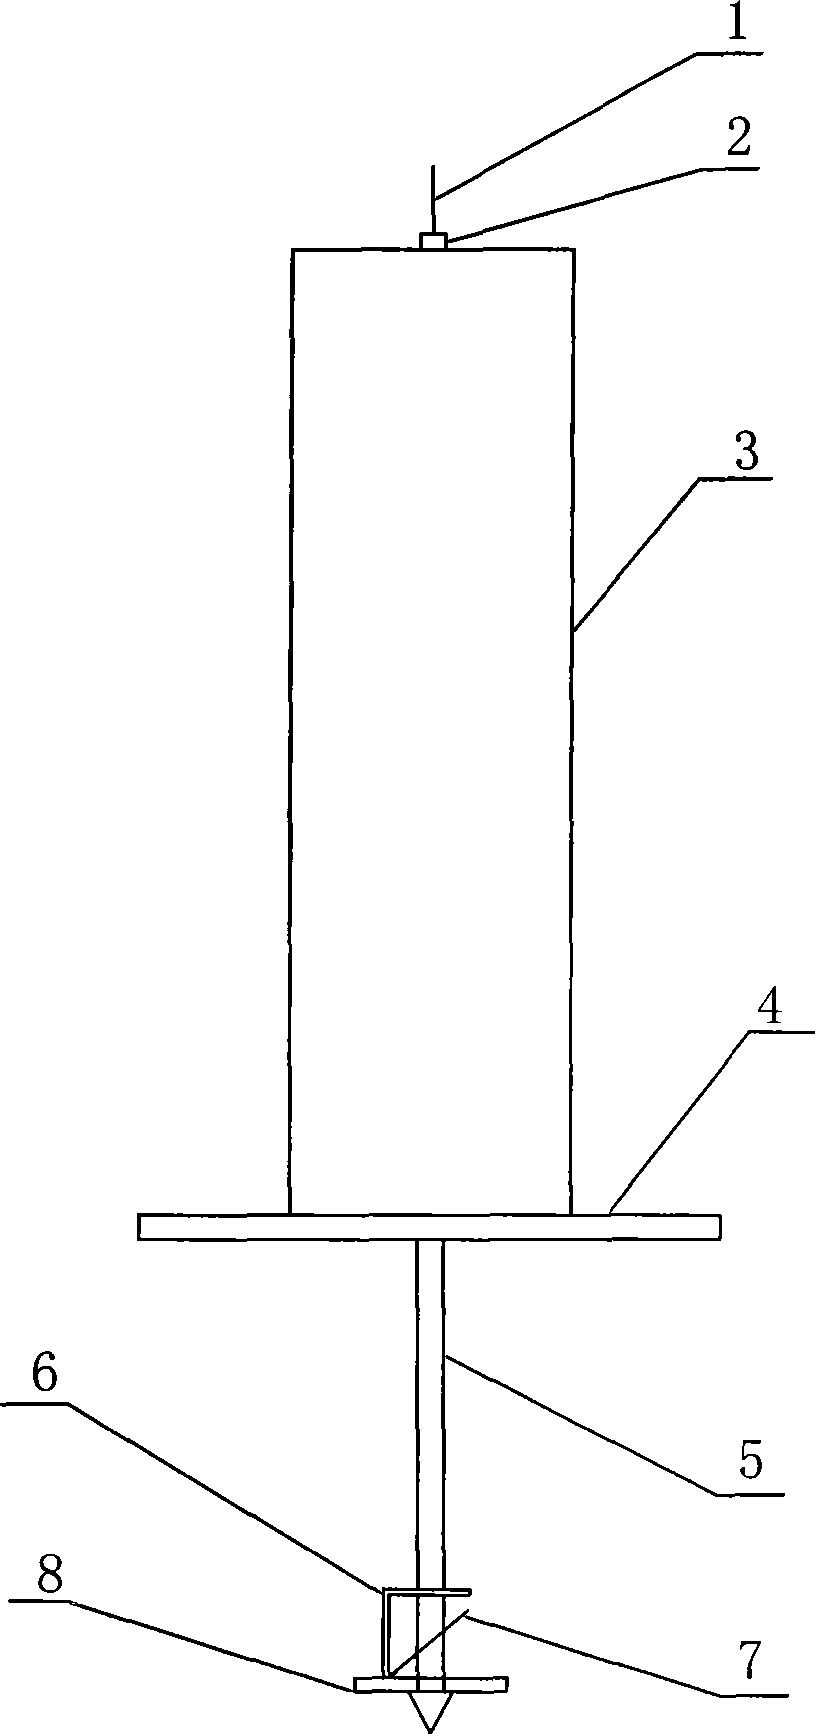 Sediment detector for filling pile